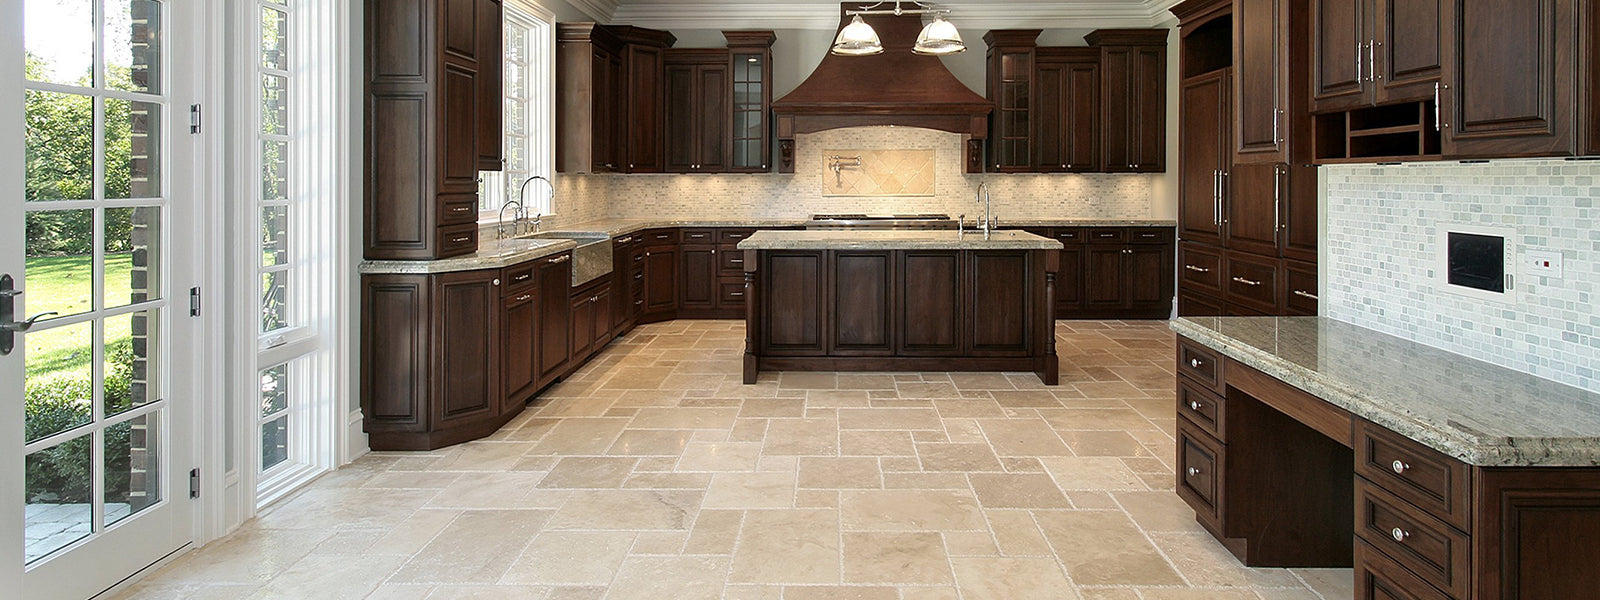 versailles pattern travertine kitchen floor tile